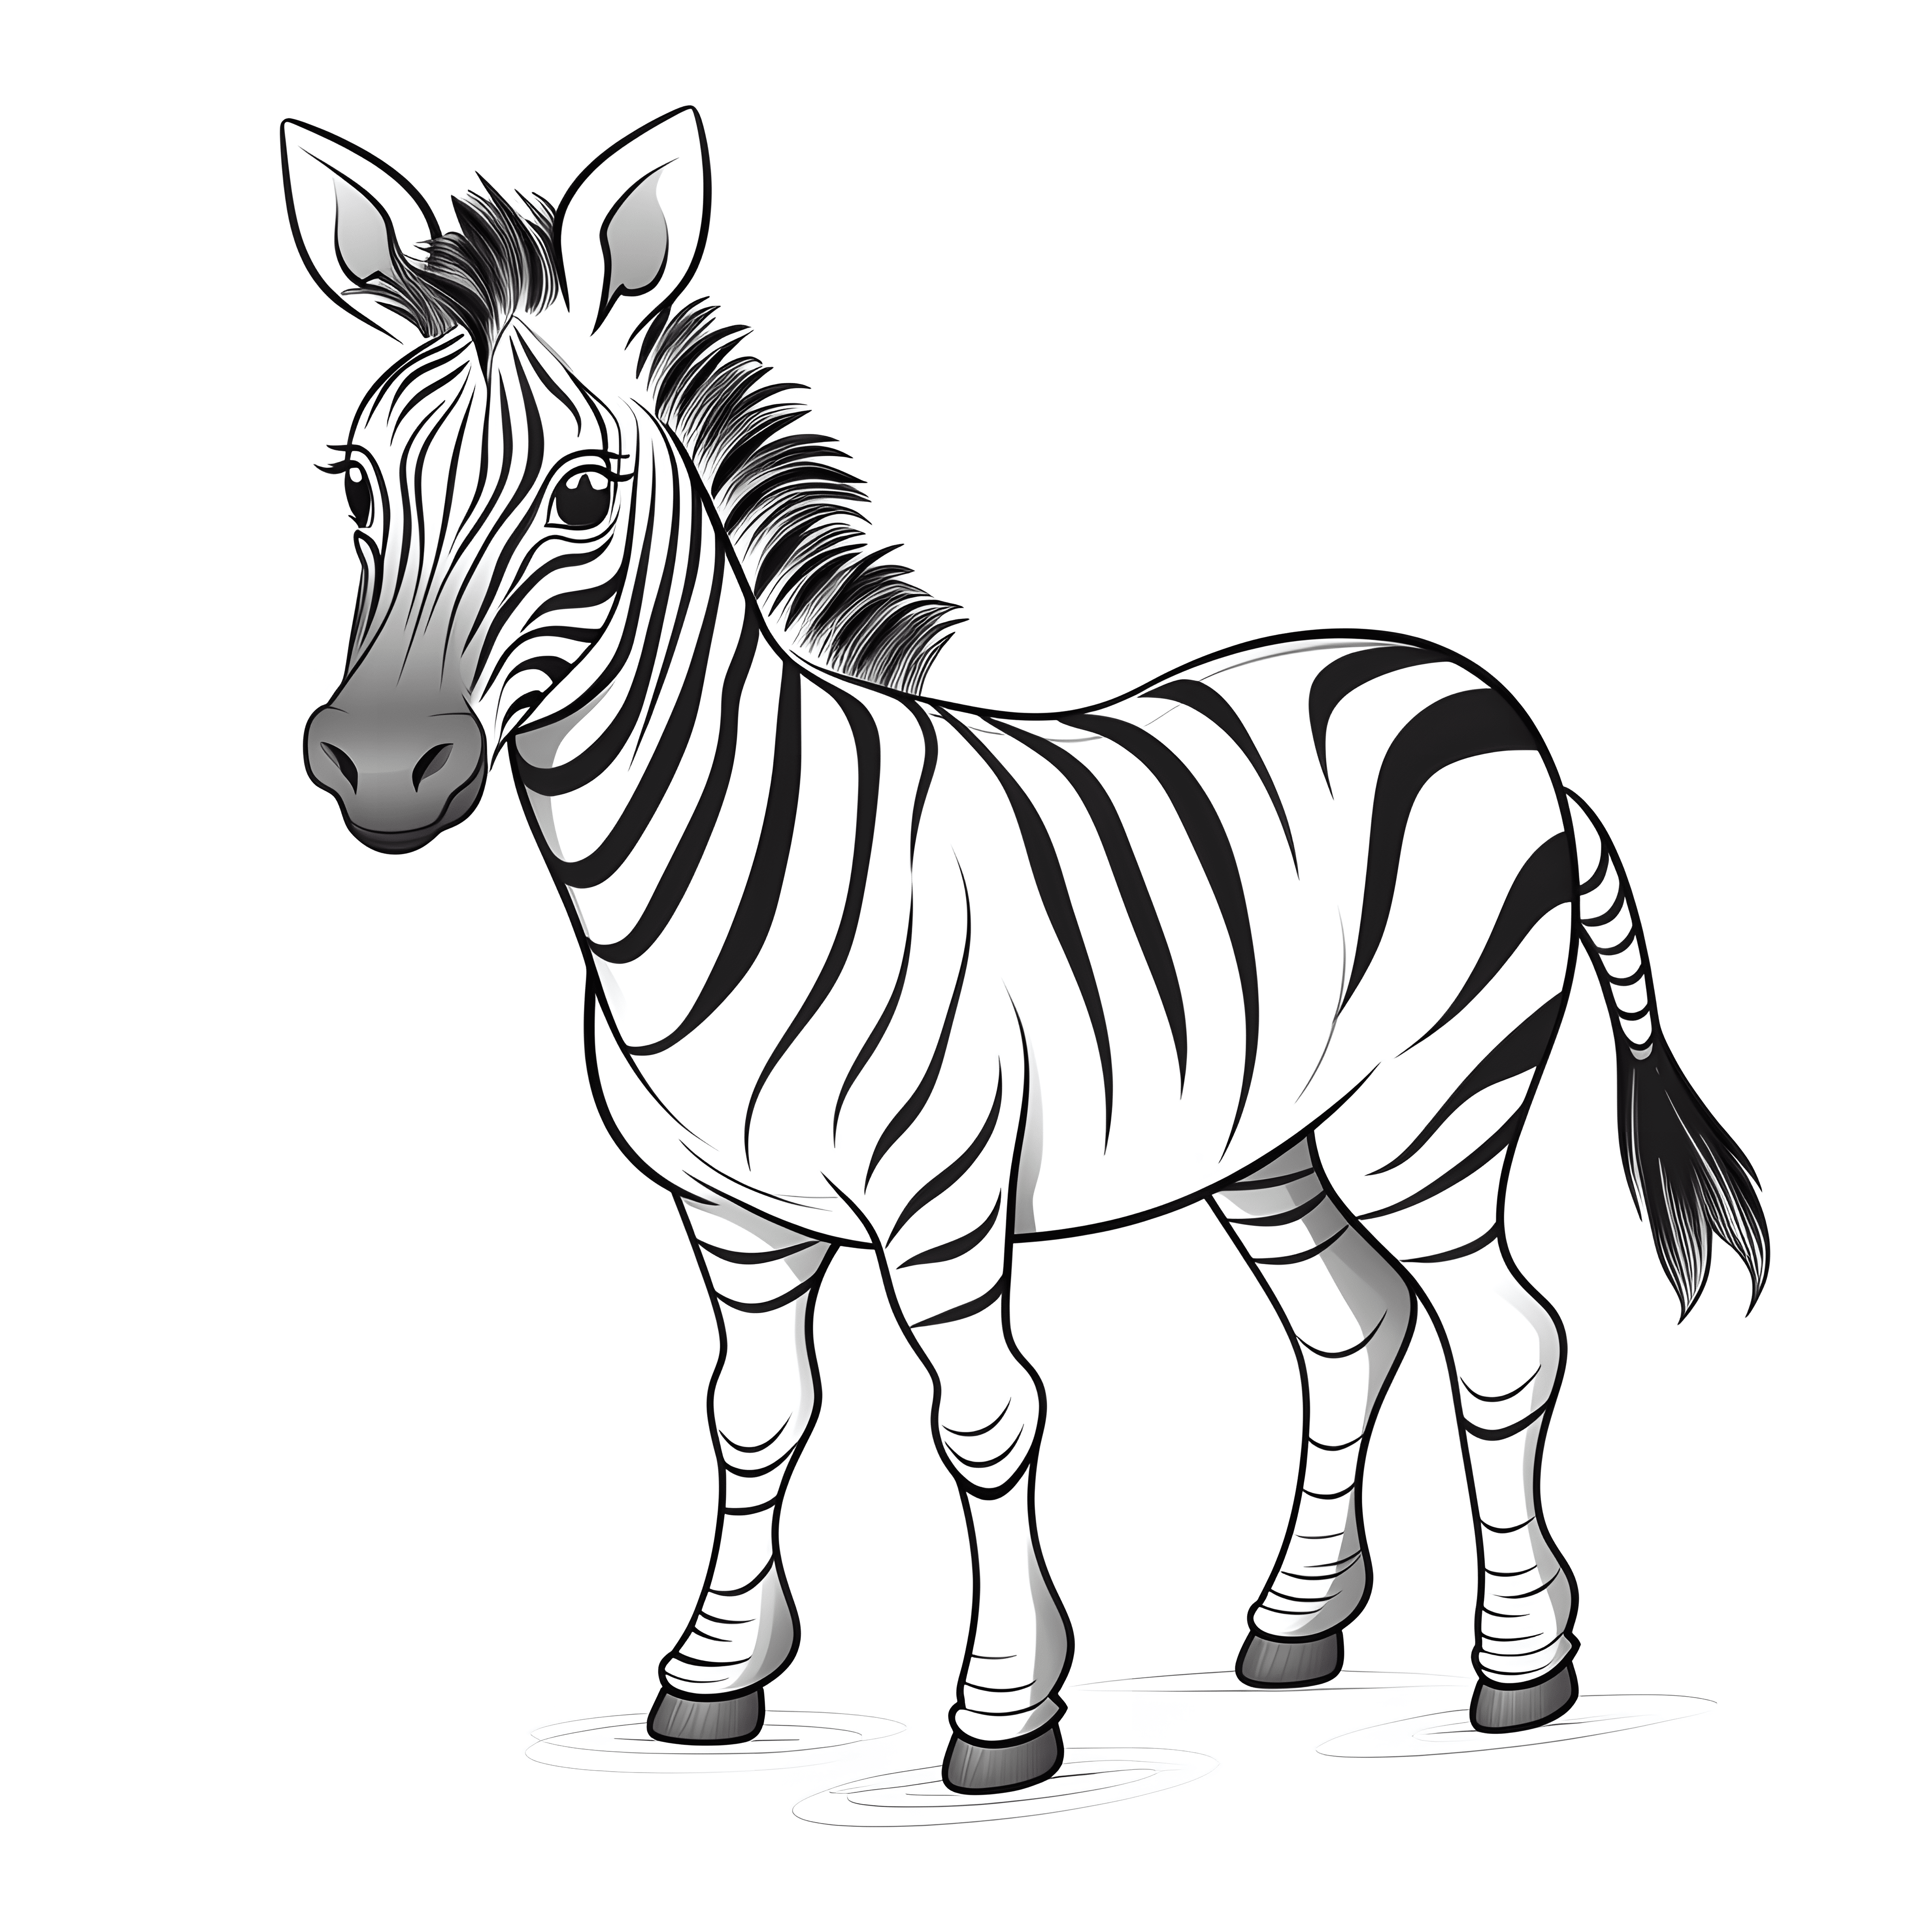 Ein sehr einfaches Cartoon-Zebra in einem Malbuch für Kinder